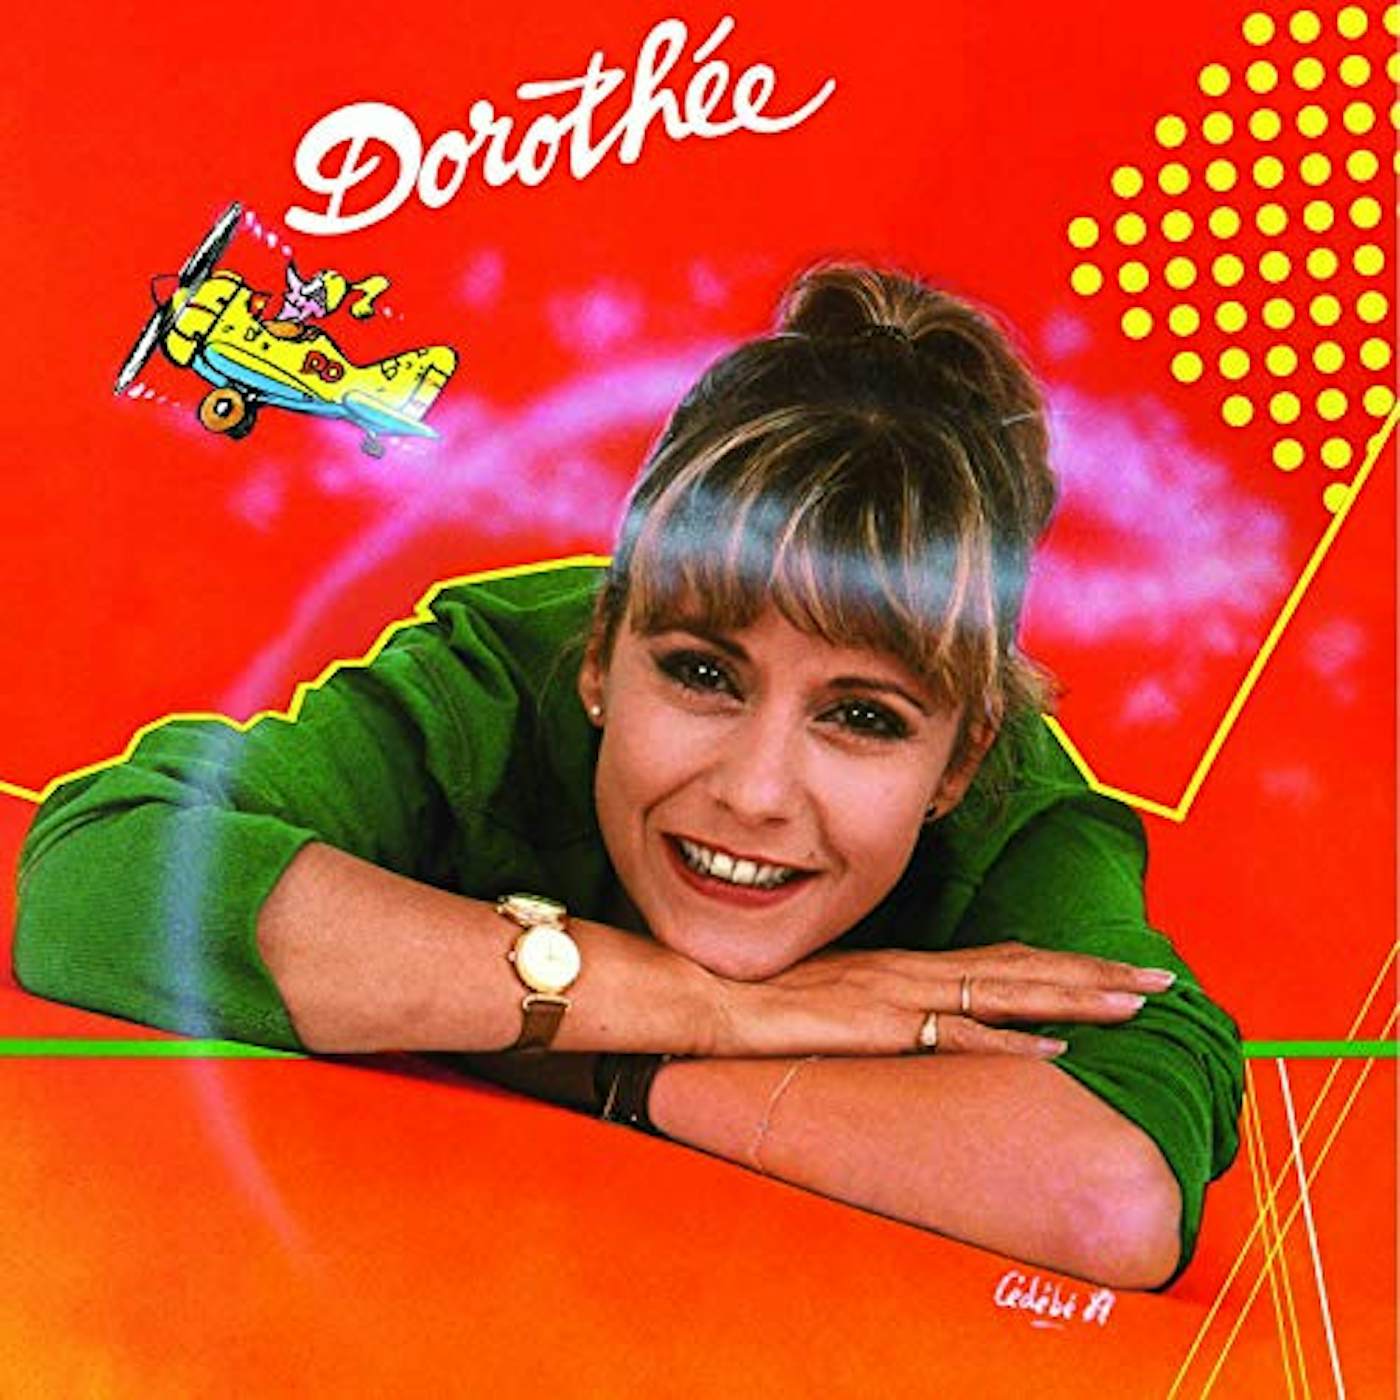 Dorothee DOCTEUR CD